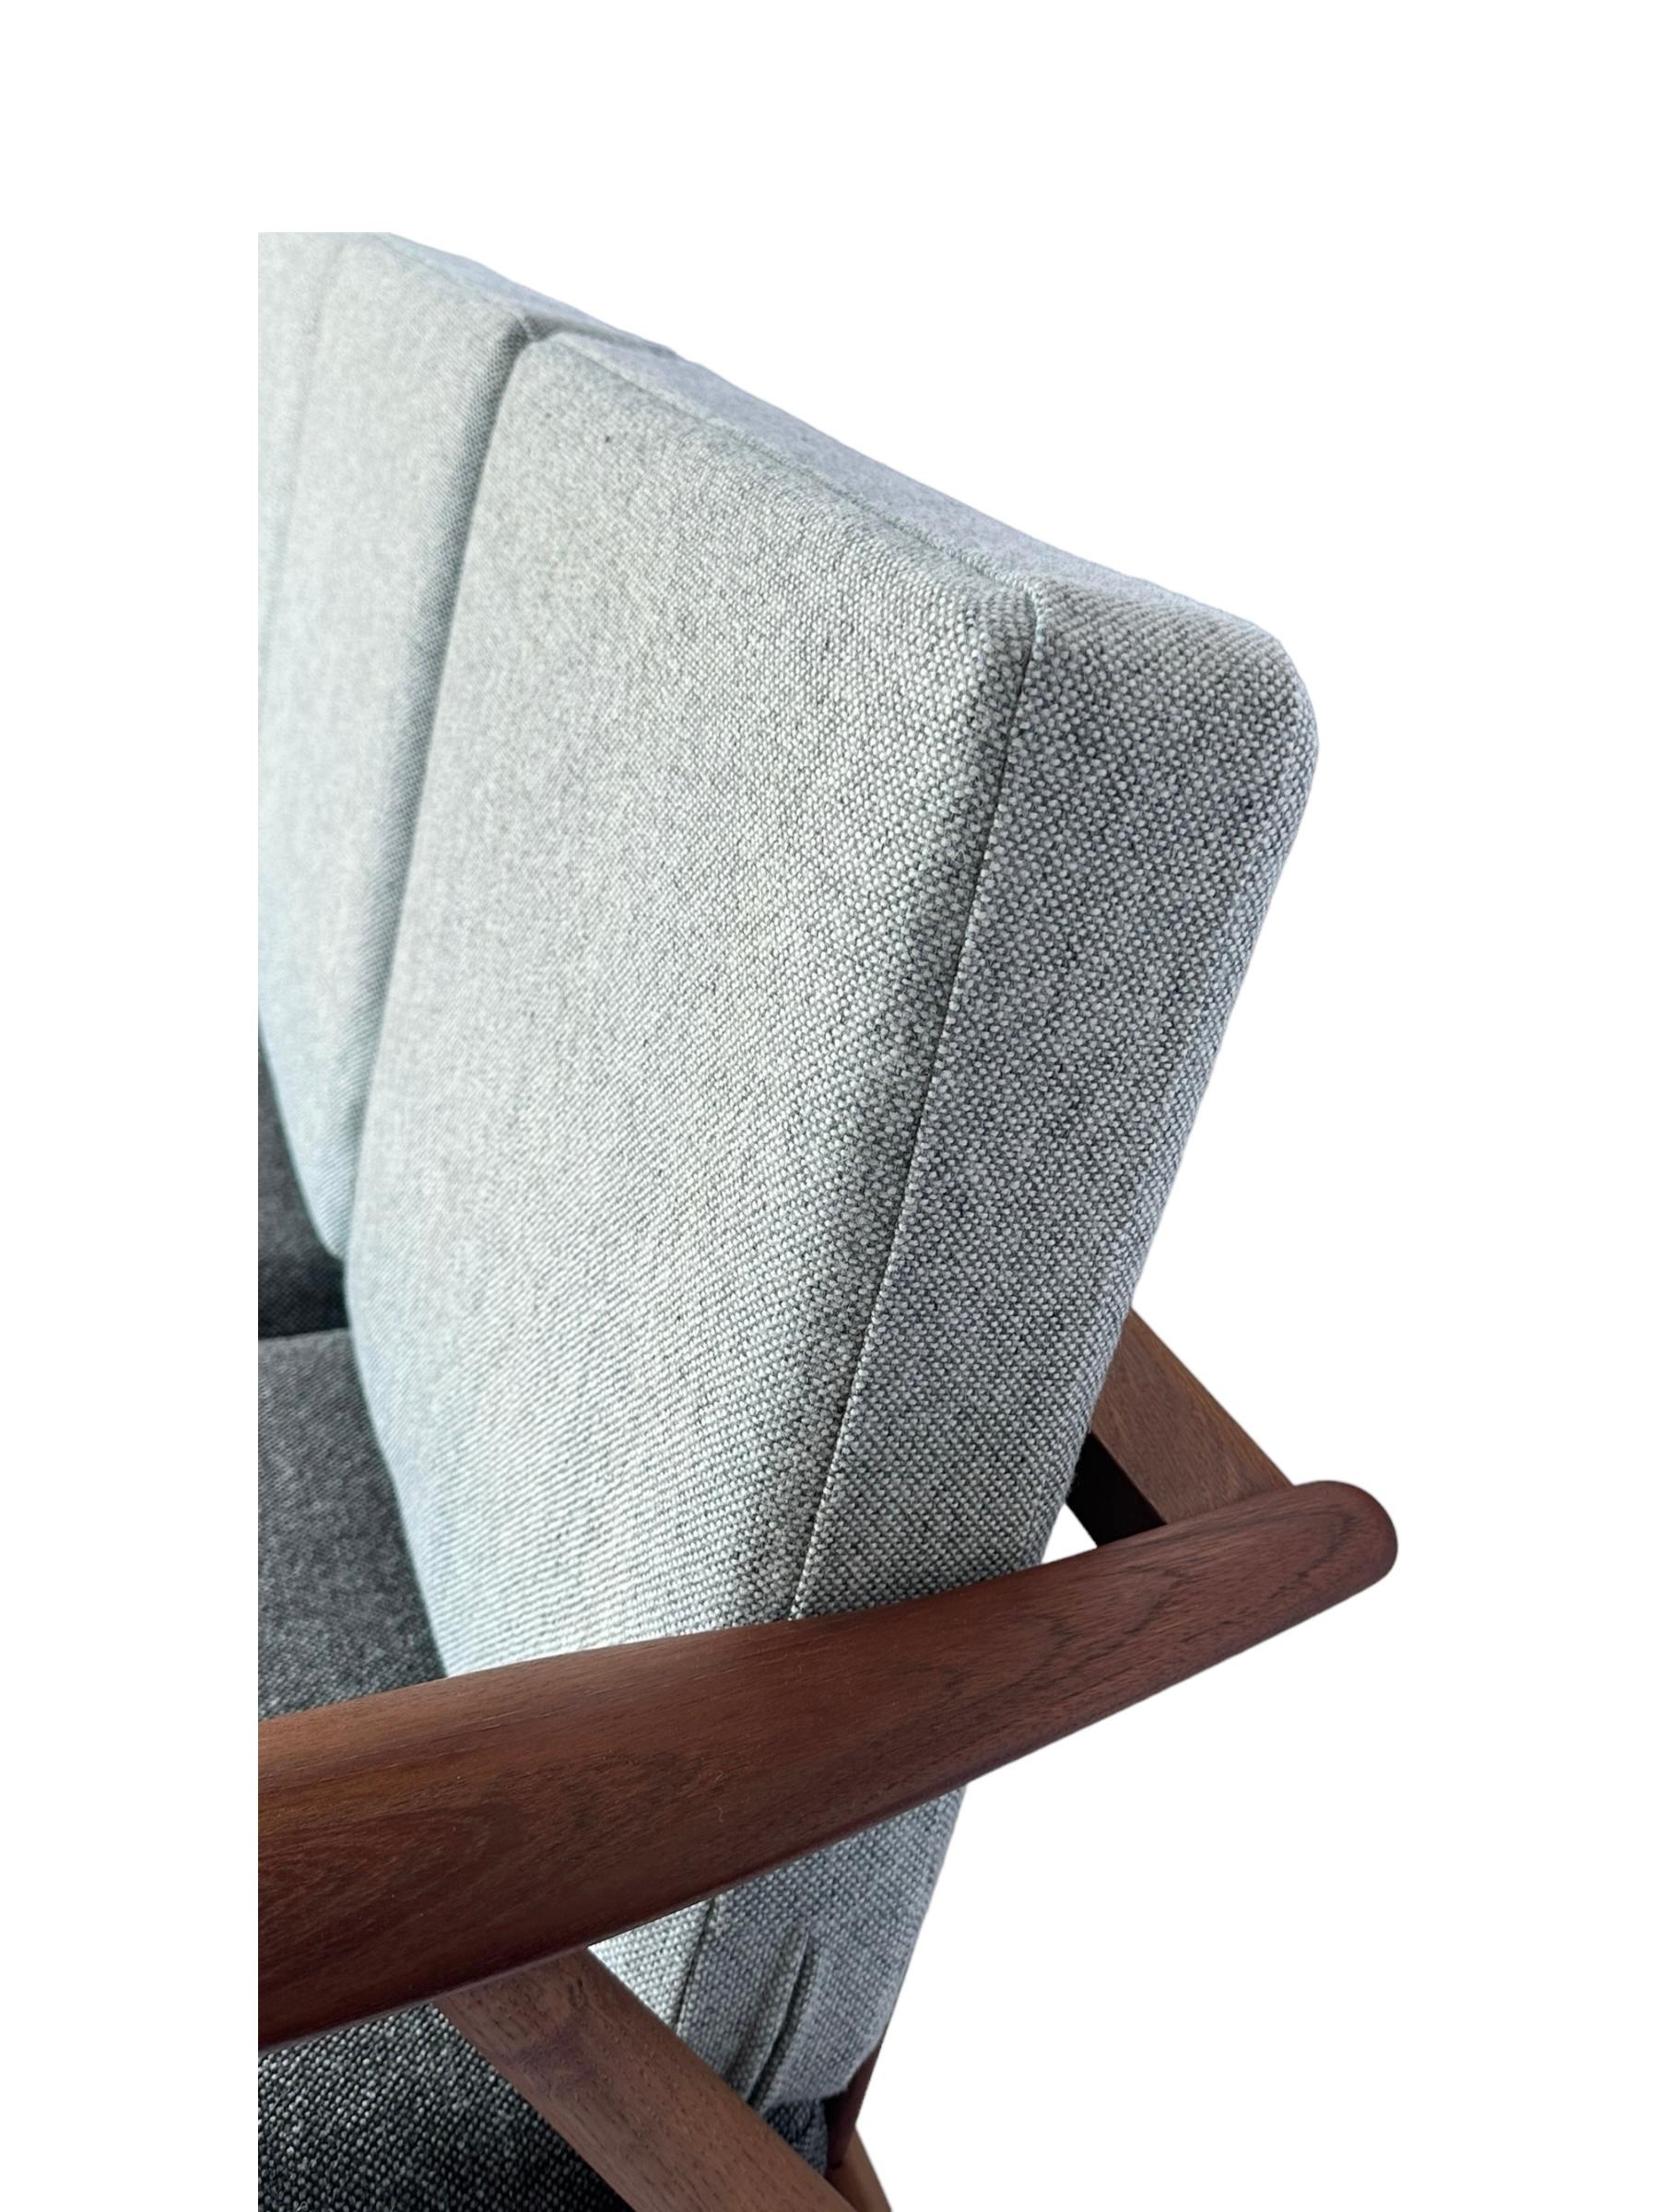 Hans J. Wegner for Getama Signed Sofa with new Mataram Upholstery For Sale 5